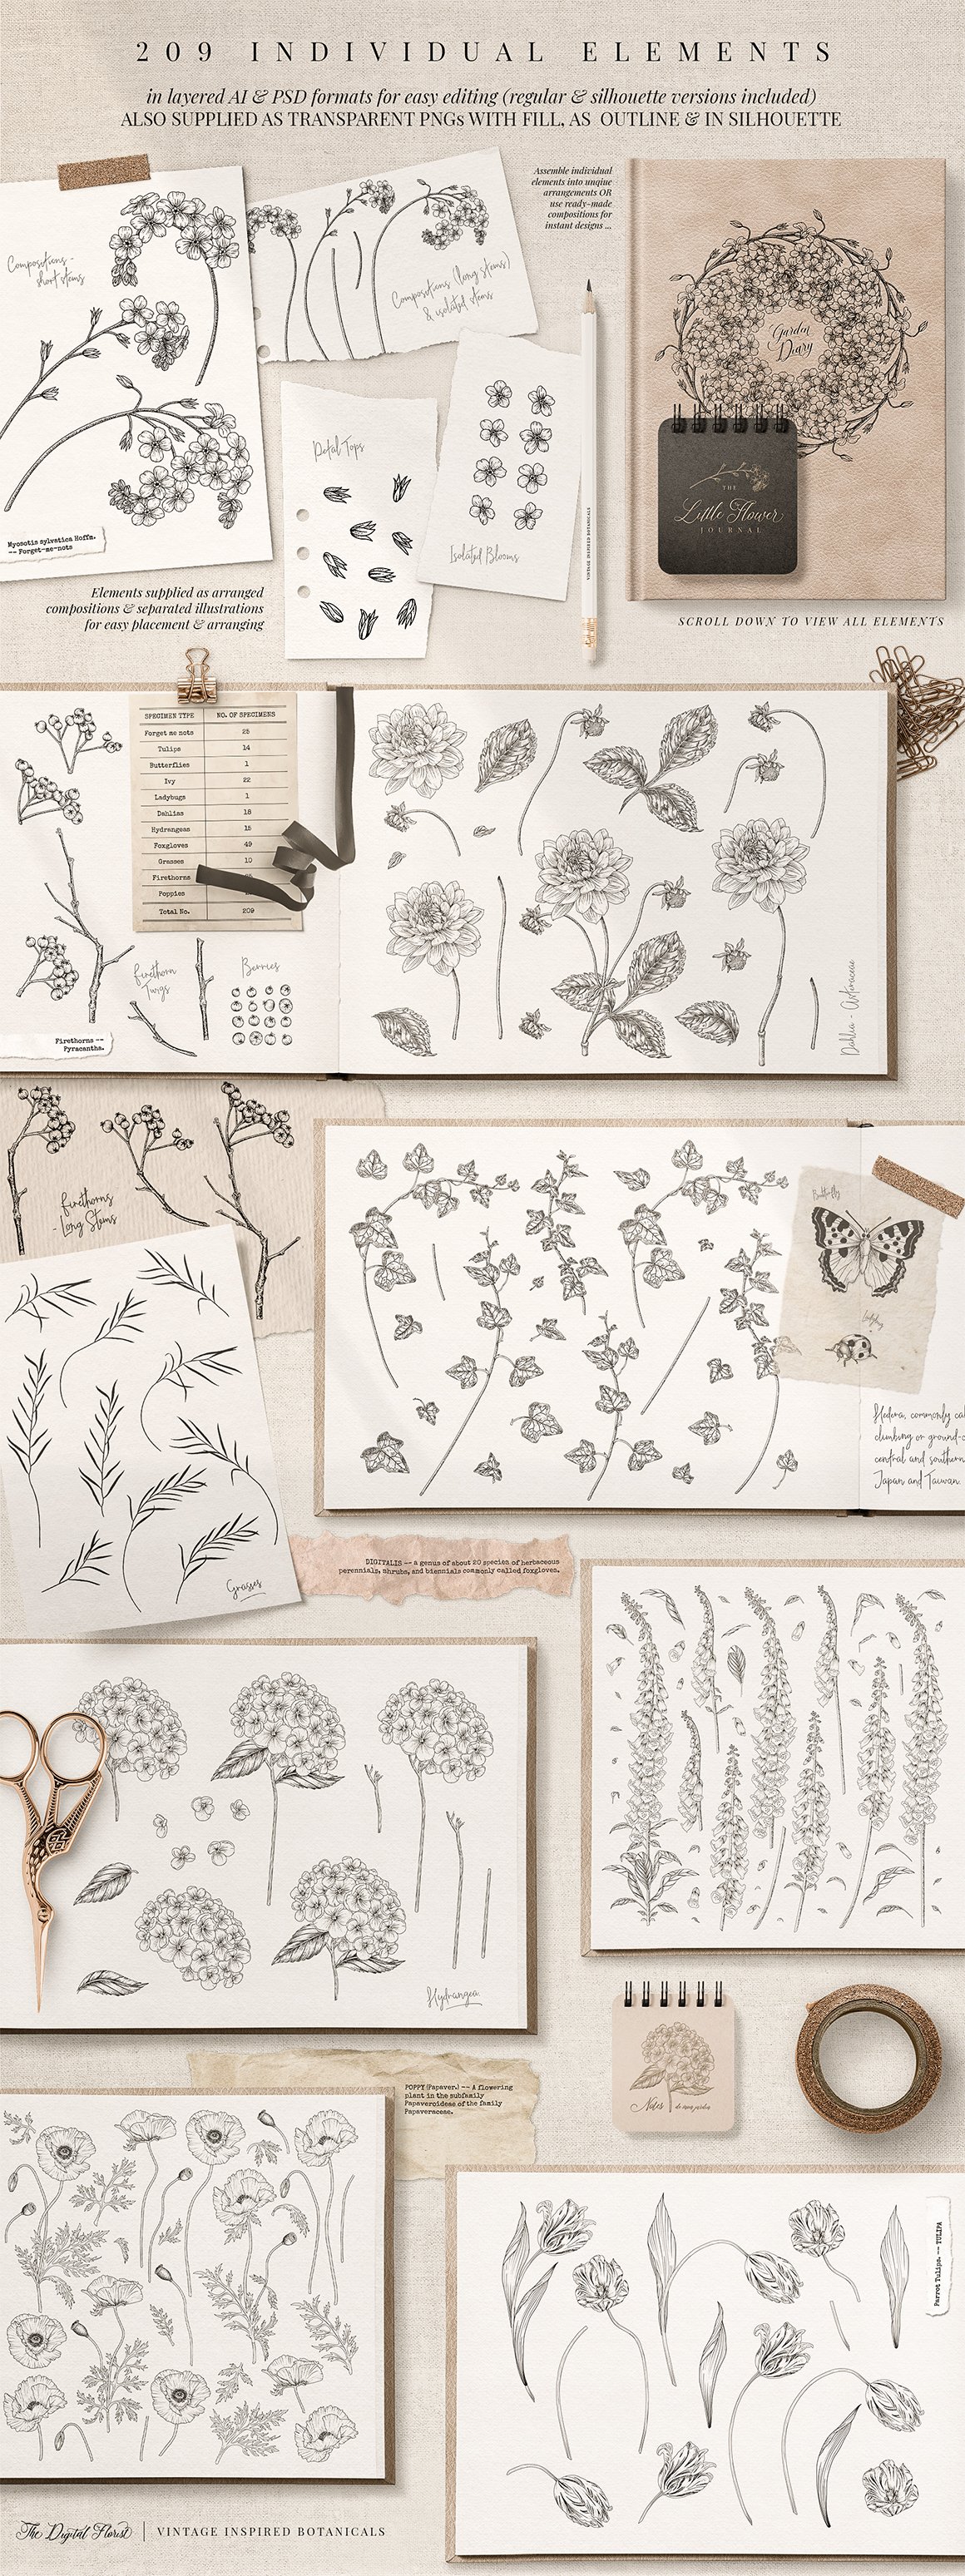 The Digital Florist - Vintage Inspired Botanicals